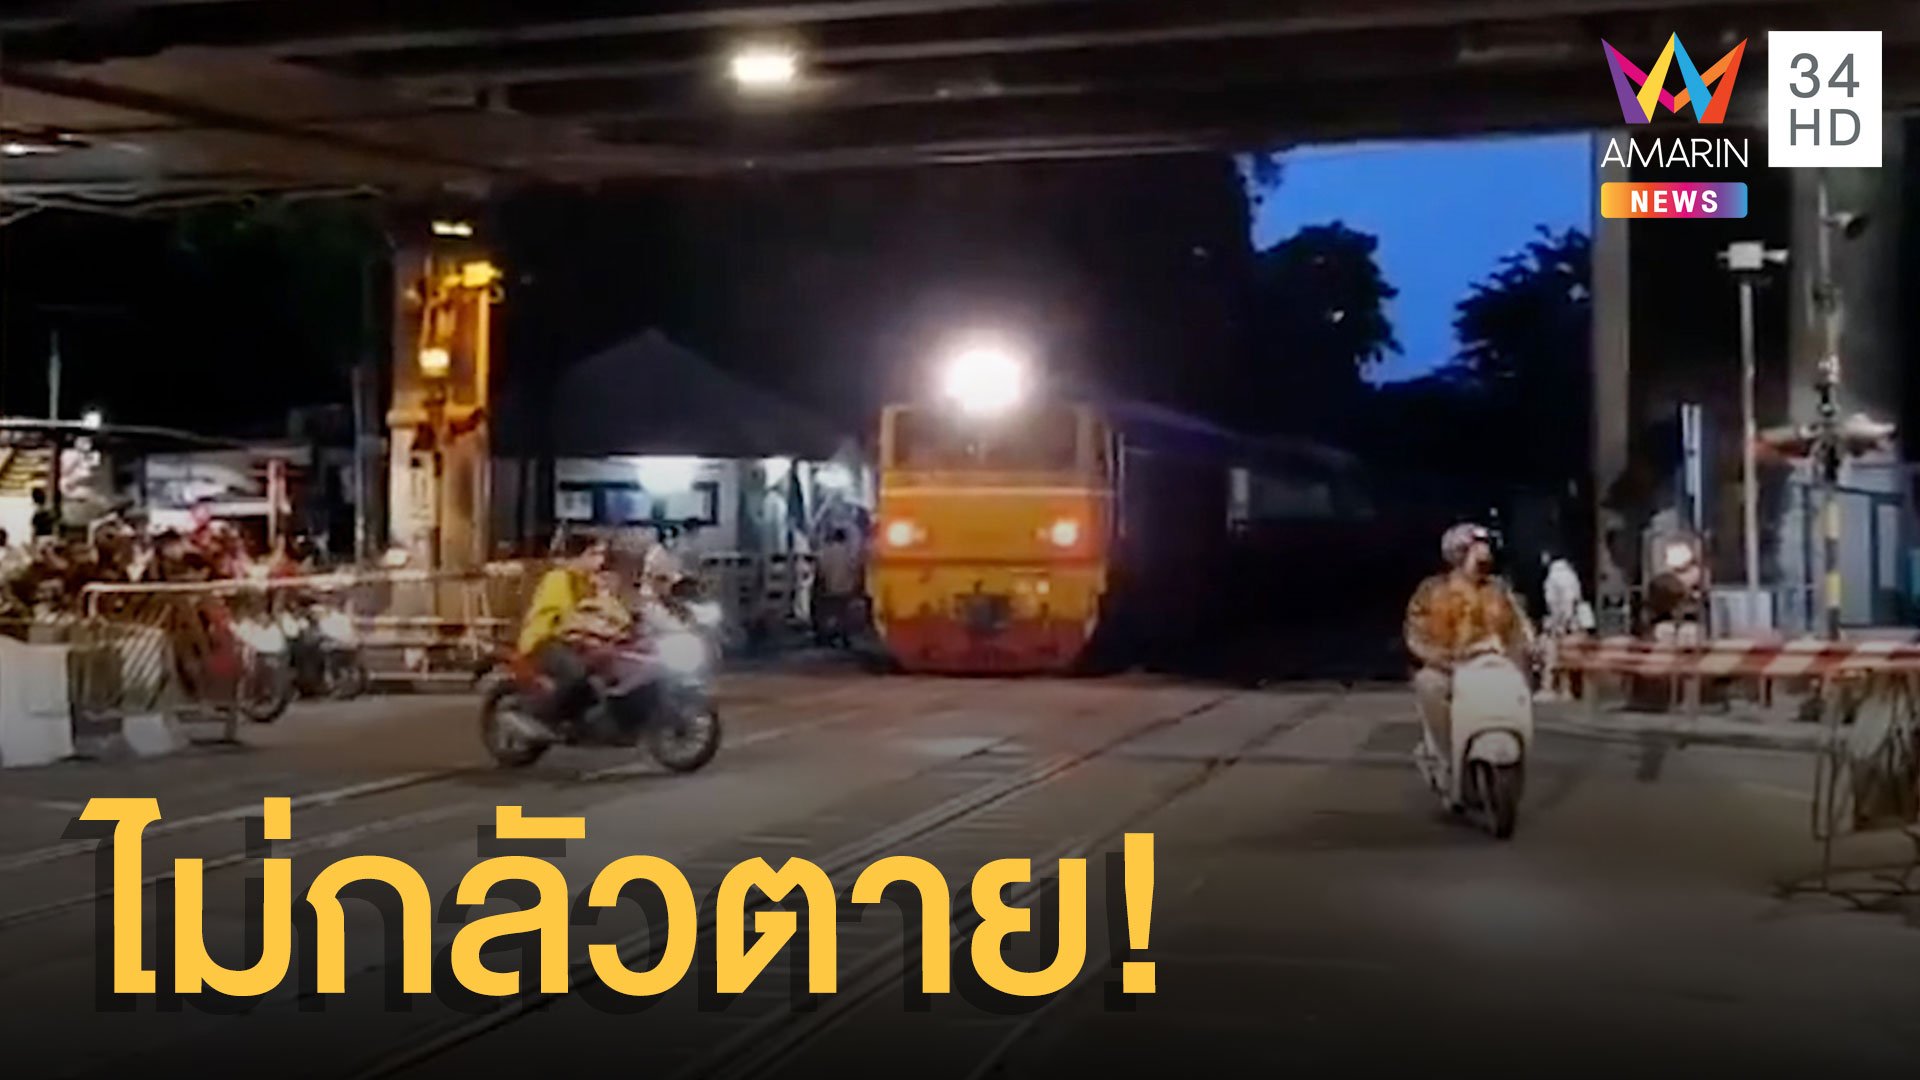 ภาพชัดเจน รถวิ่งฝ่าไม้กั้นรถไฟ ไม่กลัวแม้เคยตายหมู่ | ข่าวอรุณอมรินทร์ | 14 ต.ค. 63 | AMARIN TVHD34